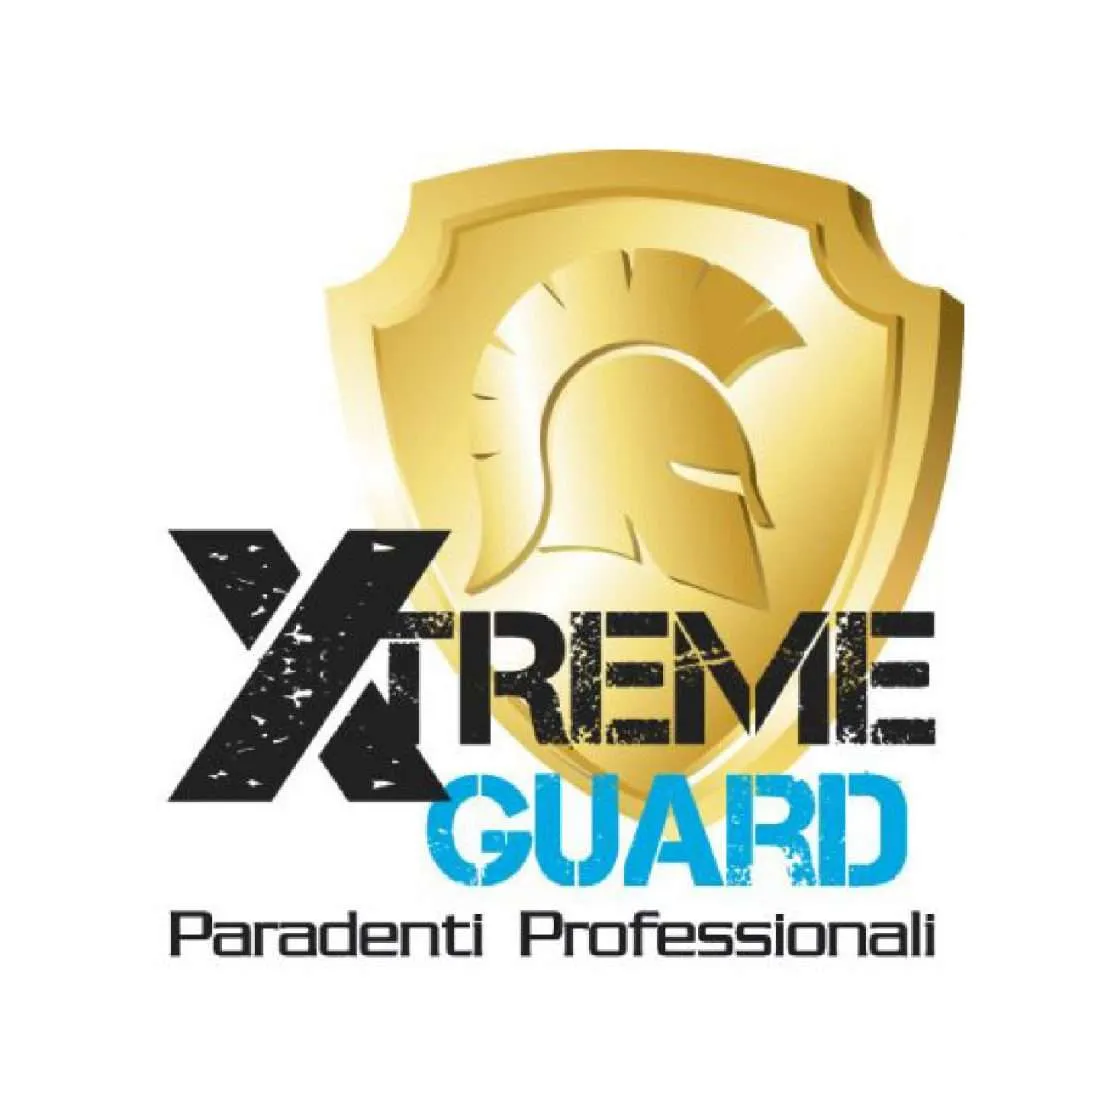 Xtreme Guard - Paredenti Professionali